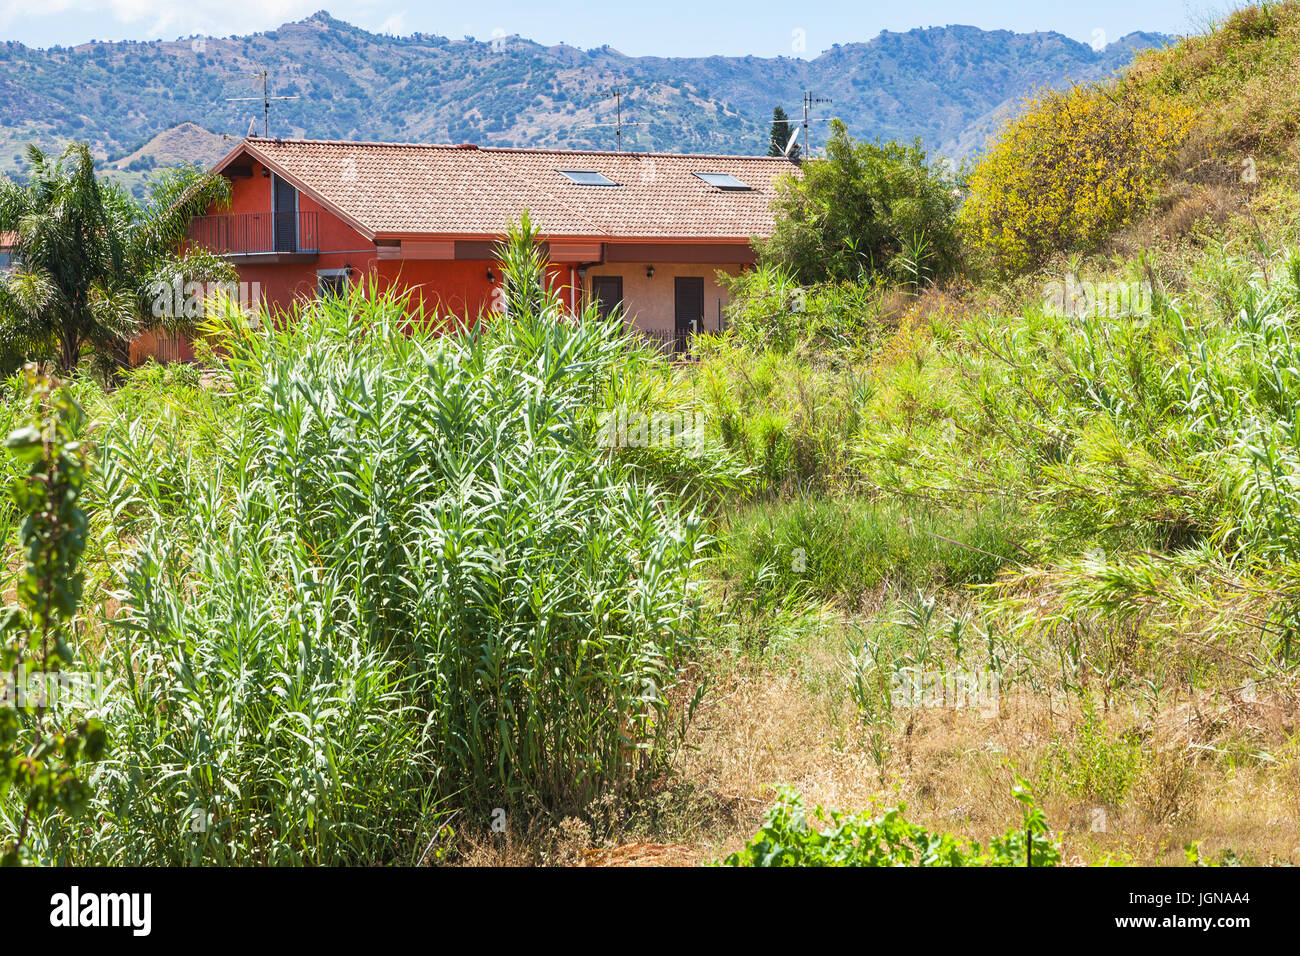 Reisen Sie nach Sizilien, Italien - Haus und verwilderten Garten in Giardini Naxos-Stadt im Sommer Stockfoto